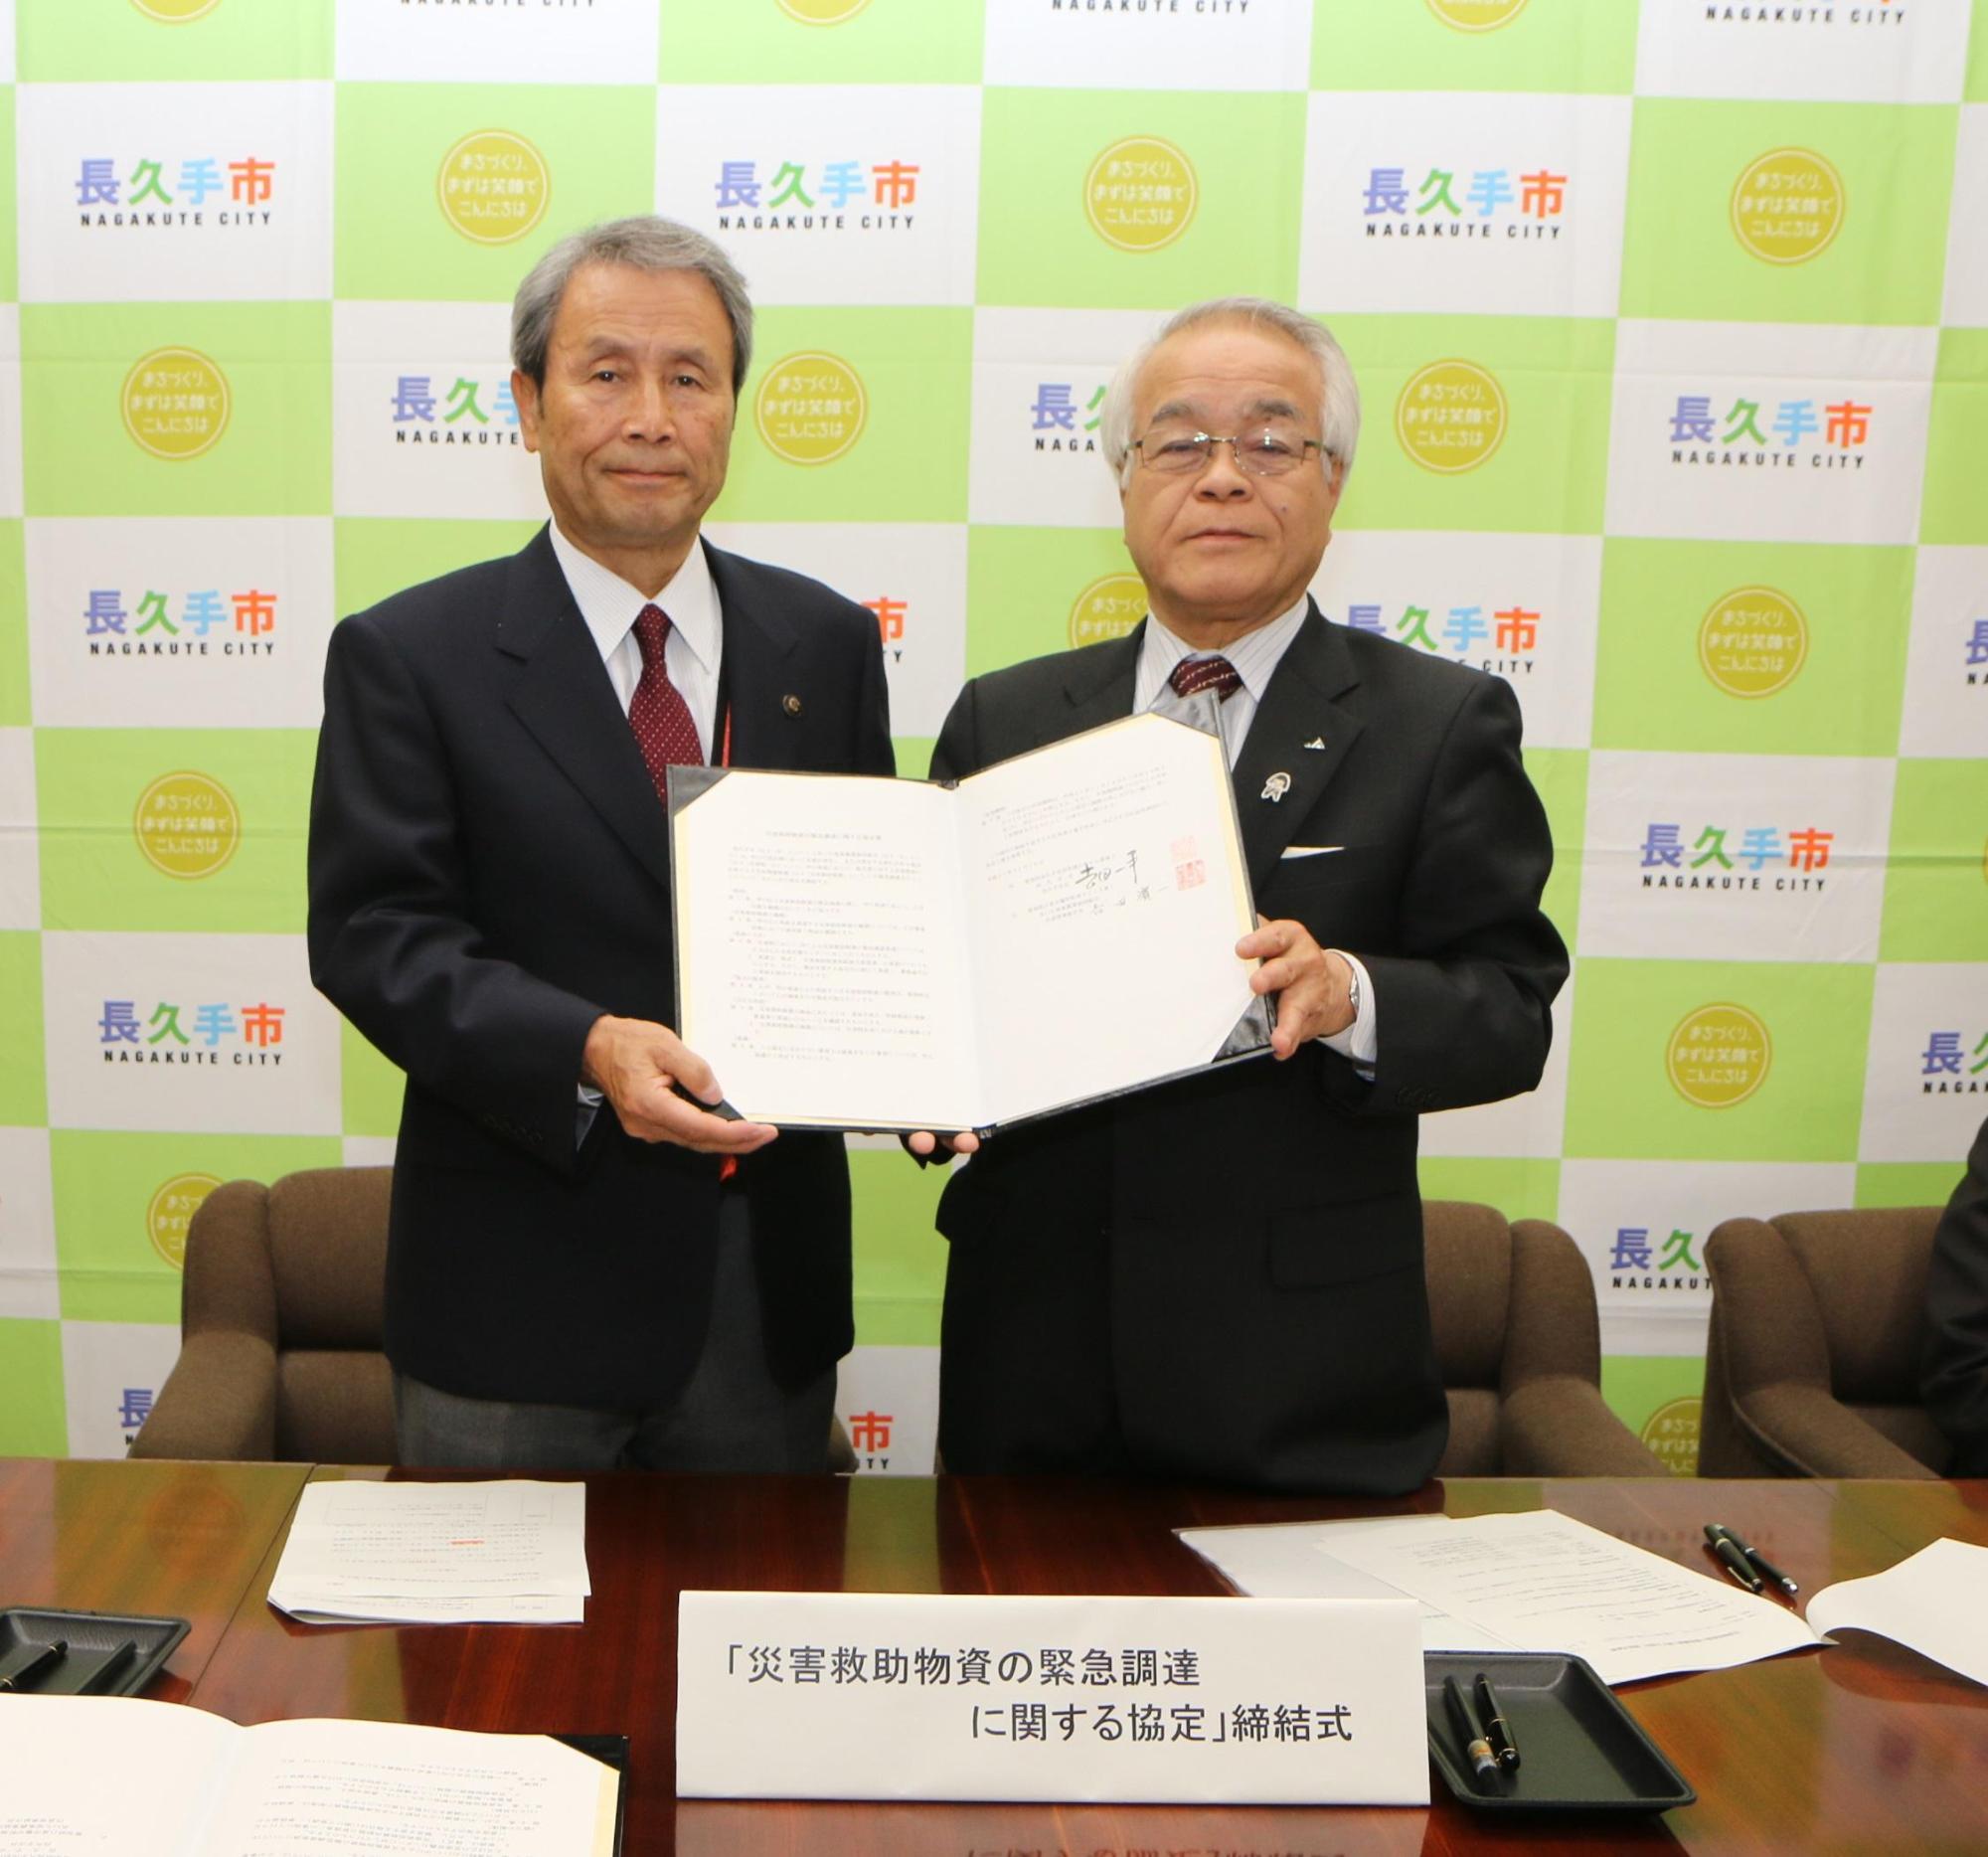 市長とあいち尾東農協協働組合の代表の方が協定書を手に記念撮影している写真